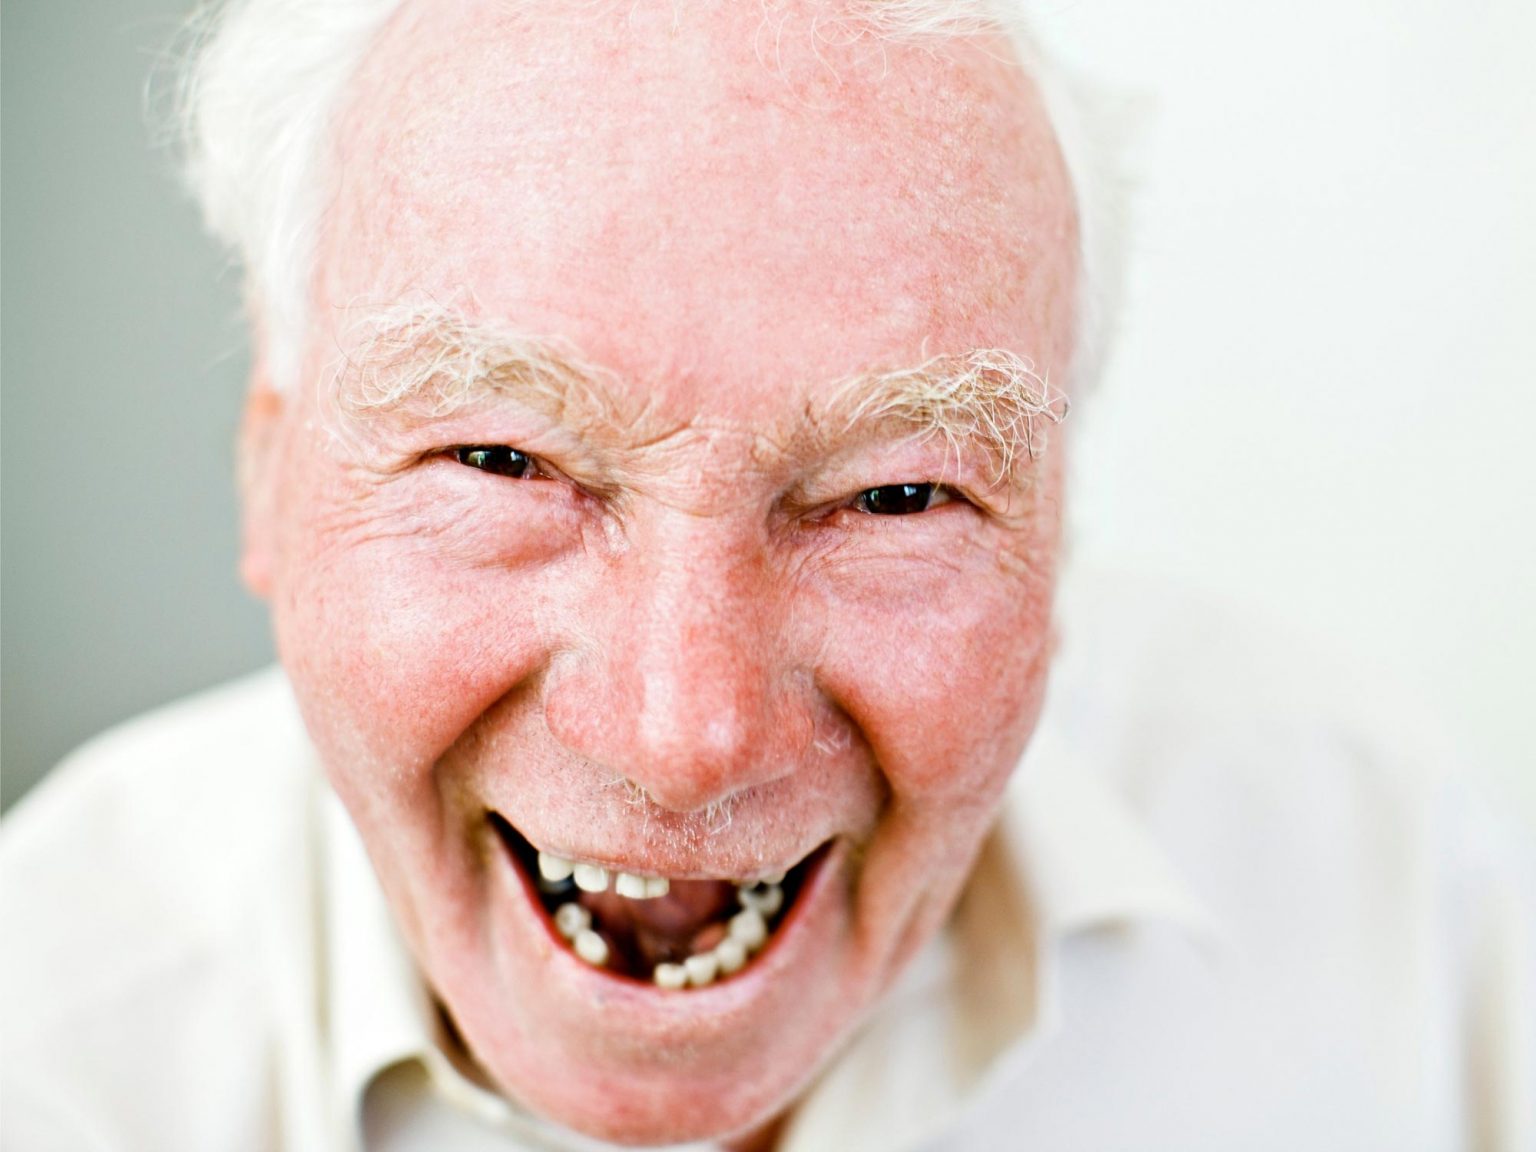 Old Man Missing Teeth.